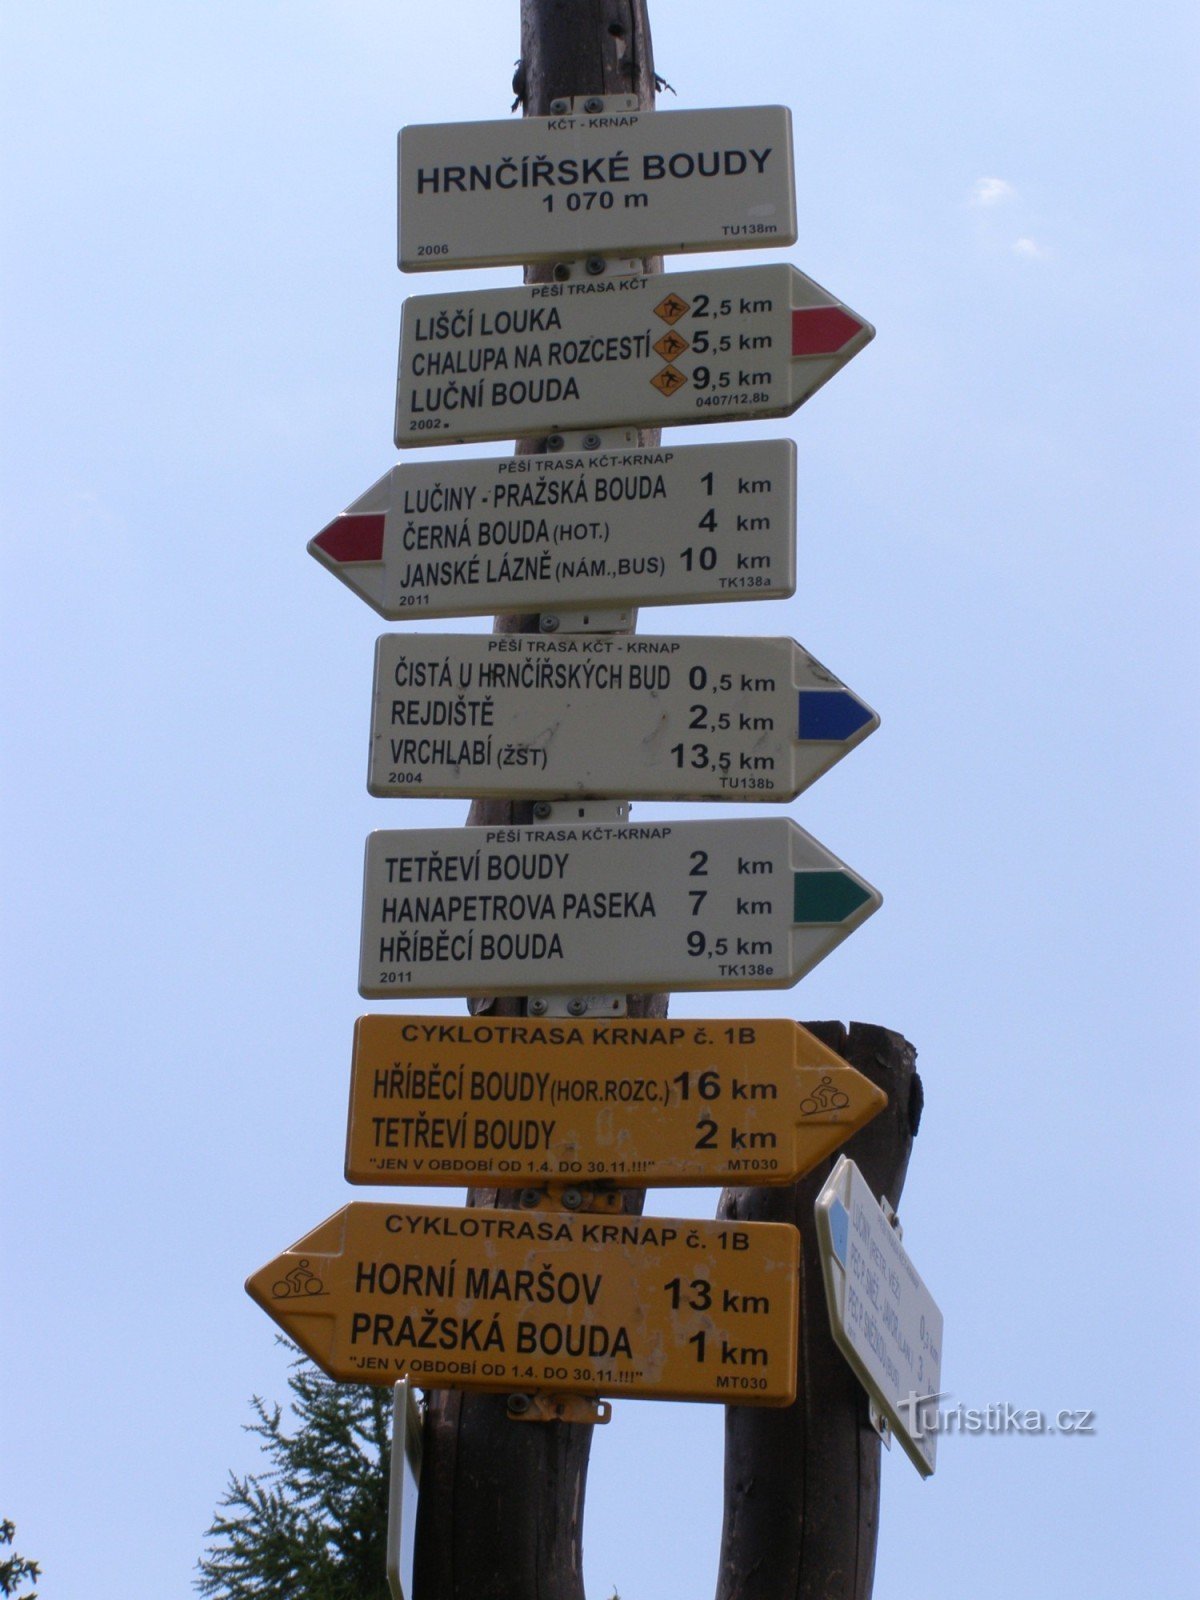 the tourist crossroads of Hrnčířské Boudy near Boudy Mír